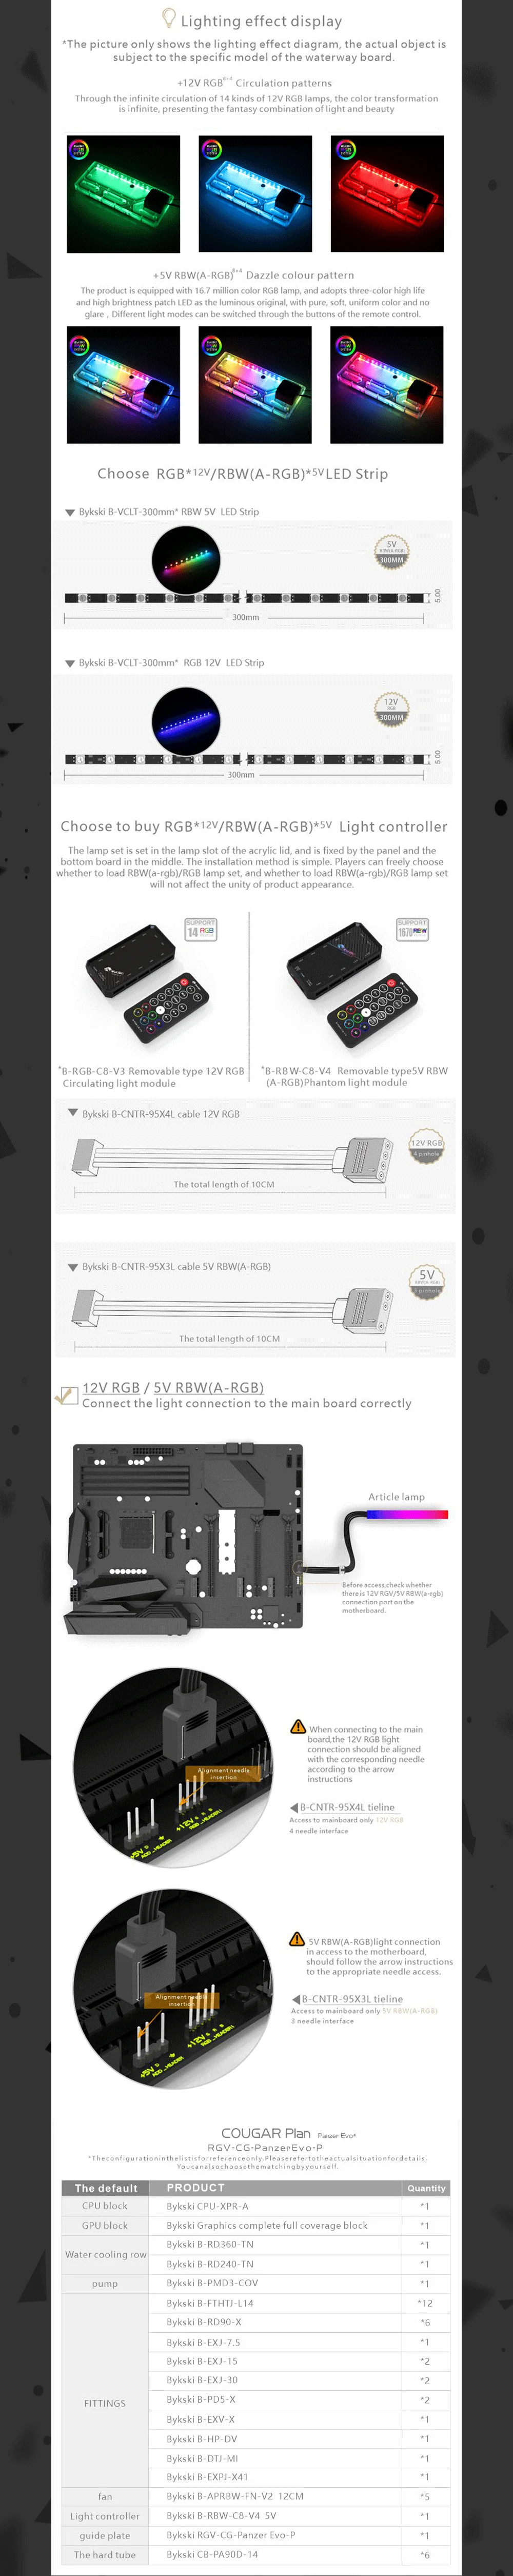 Bykski Waterway Cooling Kit For COUGAR Panzer Evo Case, 5V ARGB, For Single GPU Building, RGV-CG-Panzer Evo-P  